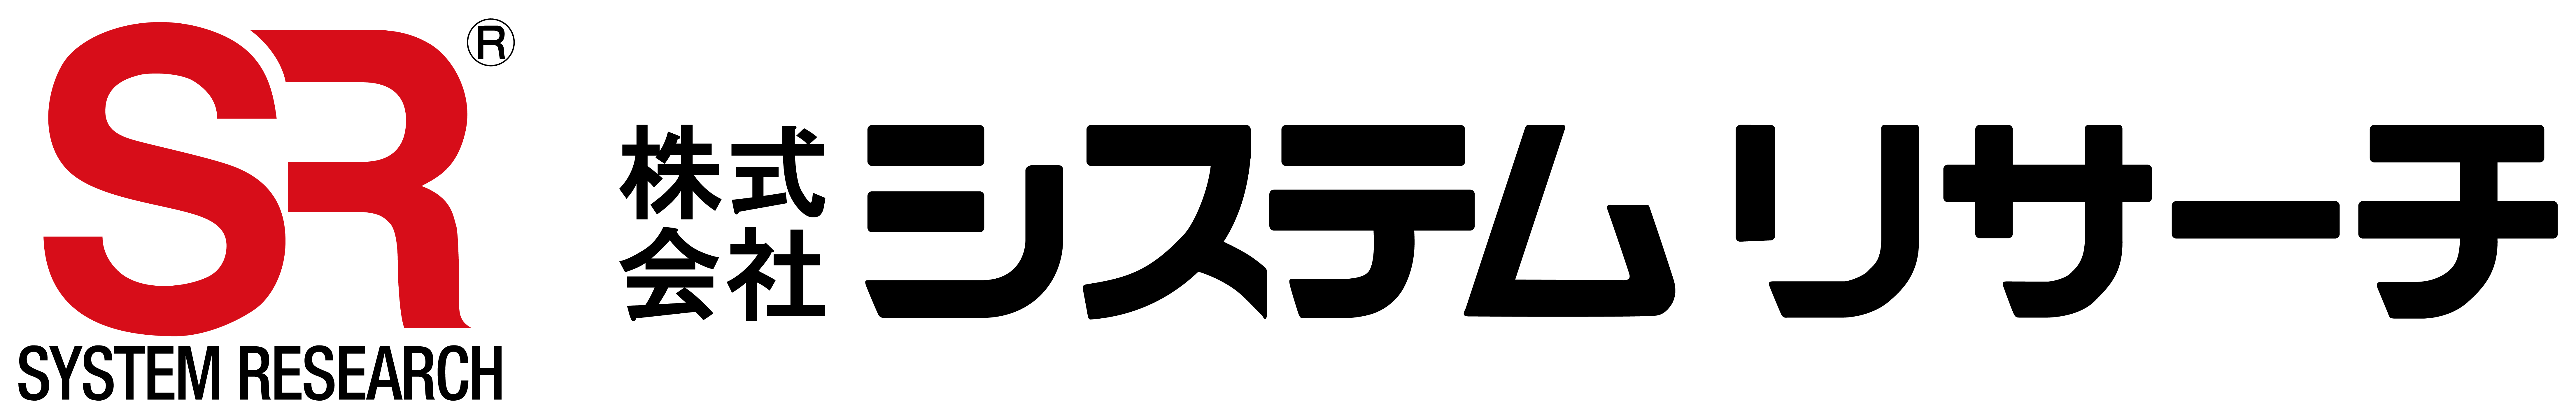 Logotipo da System Research